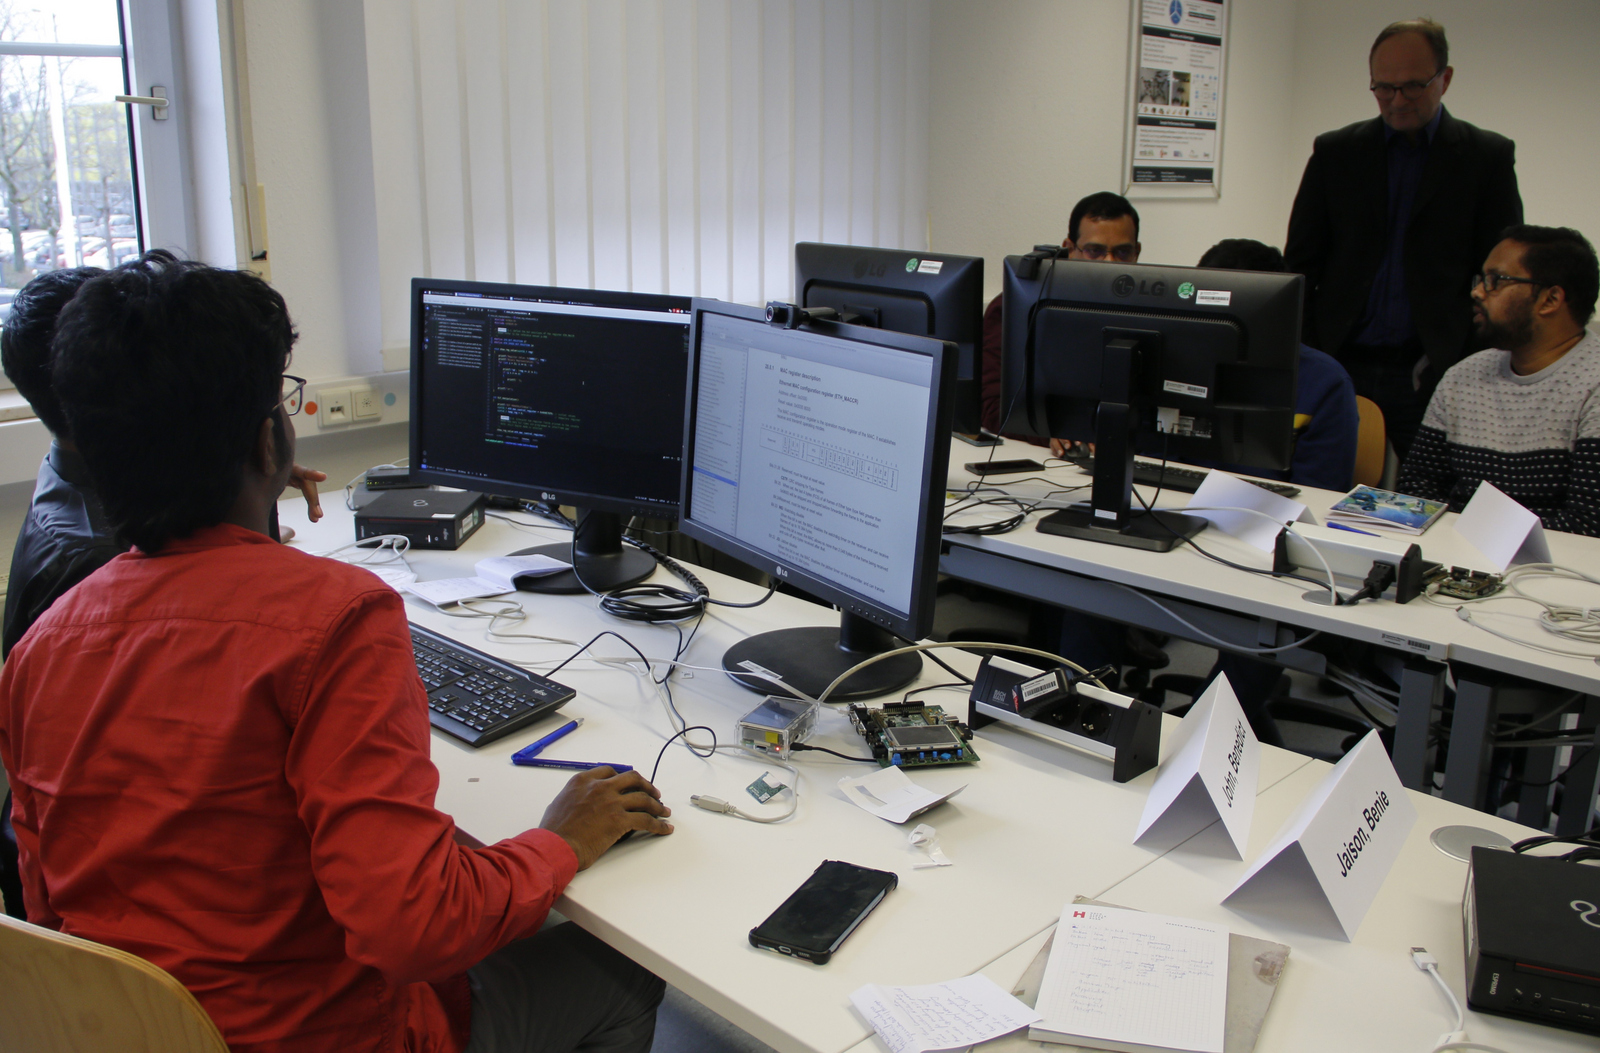 Teilnehmende sitzen an Computern und programmieren im Hintergrund beobachtet Prof. Sikora ihr Arbeit